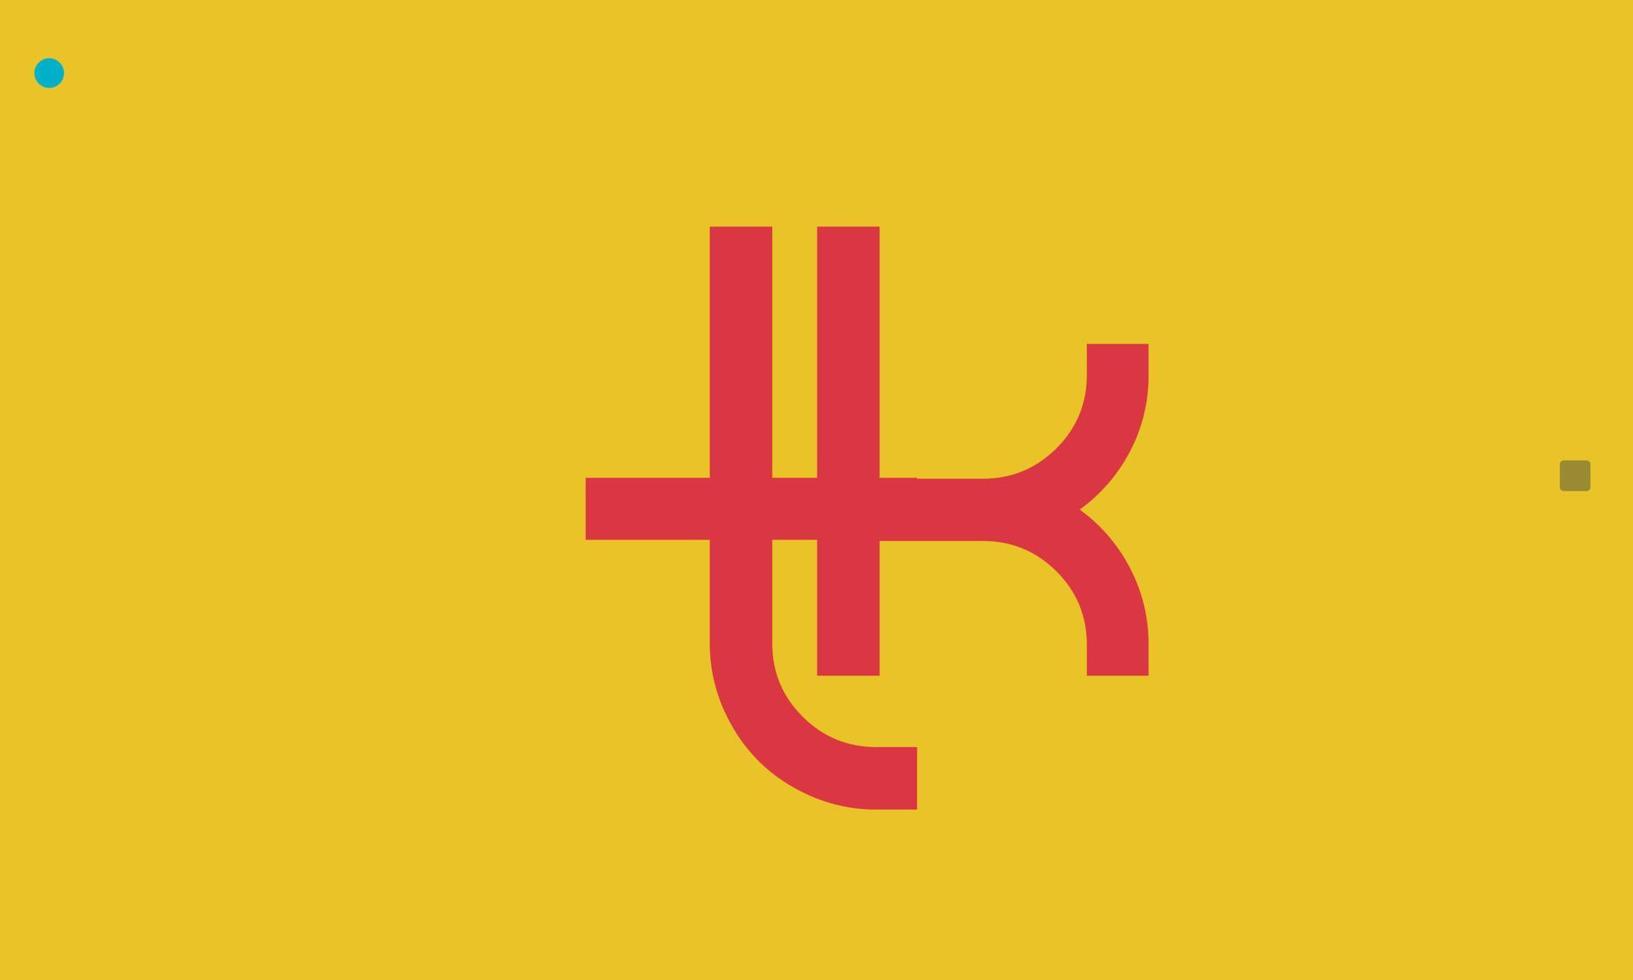 alphabet lettres initiales monogramme logo tk, kt, t et k vecteur